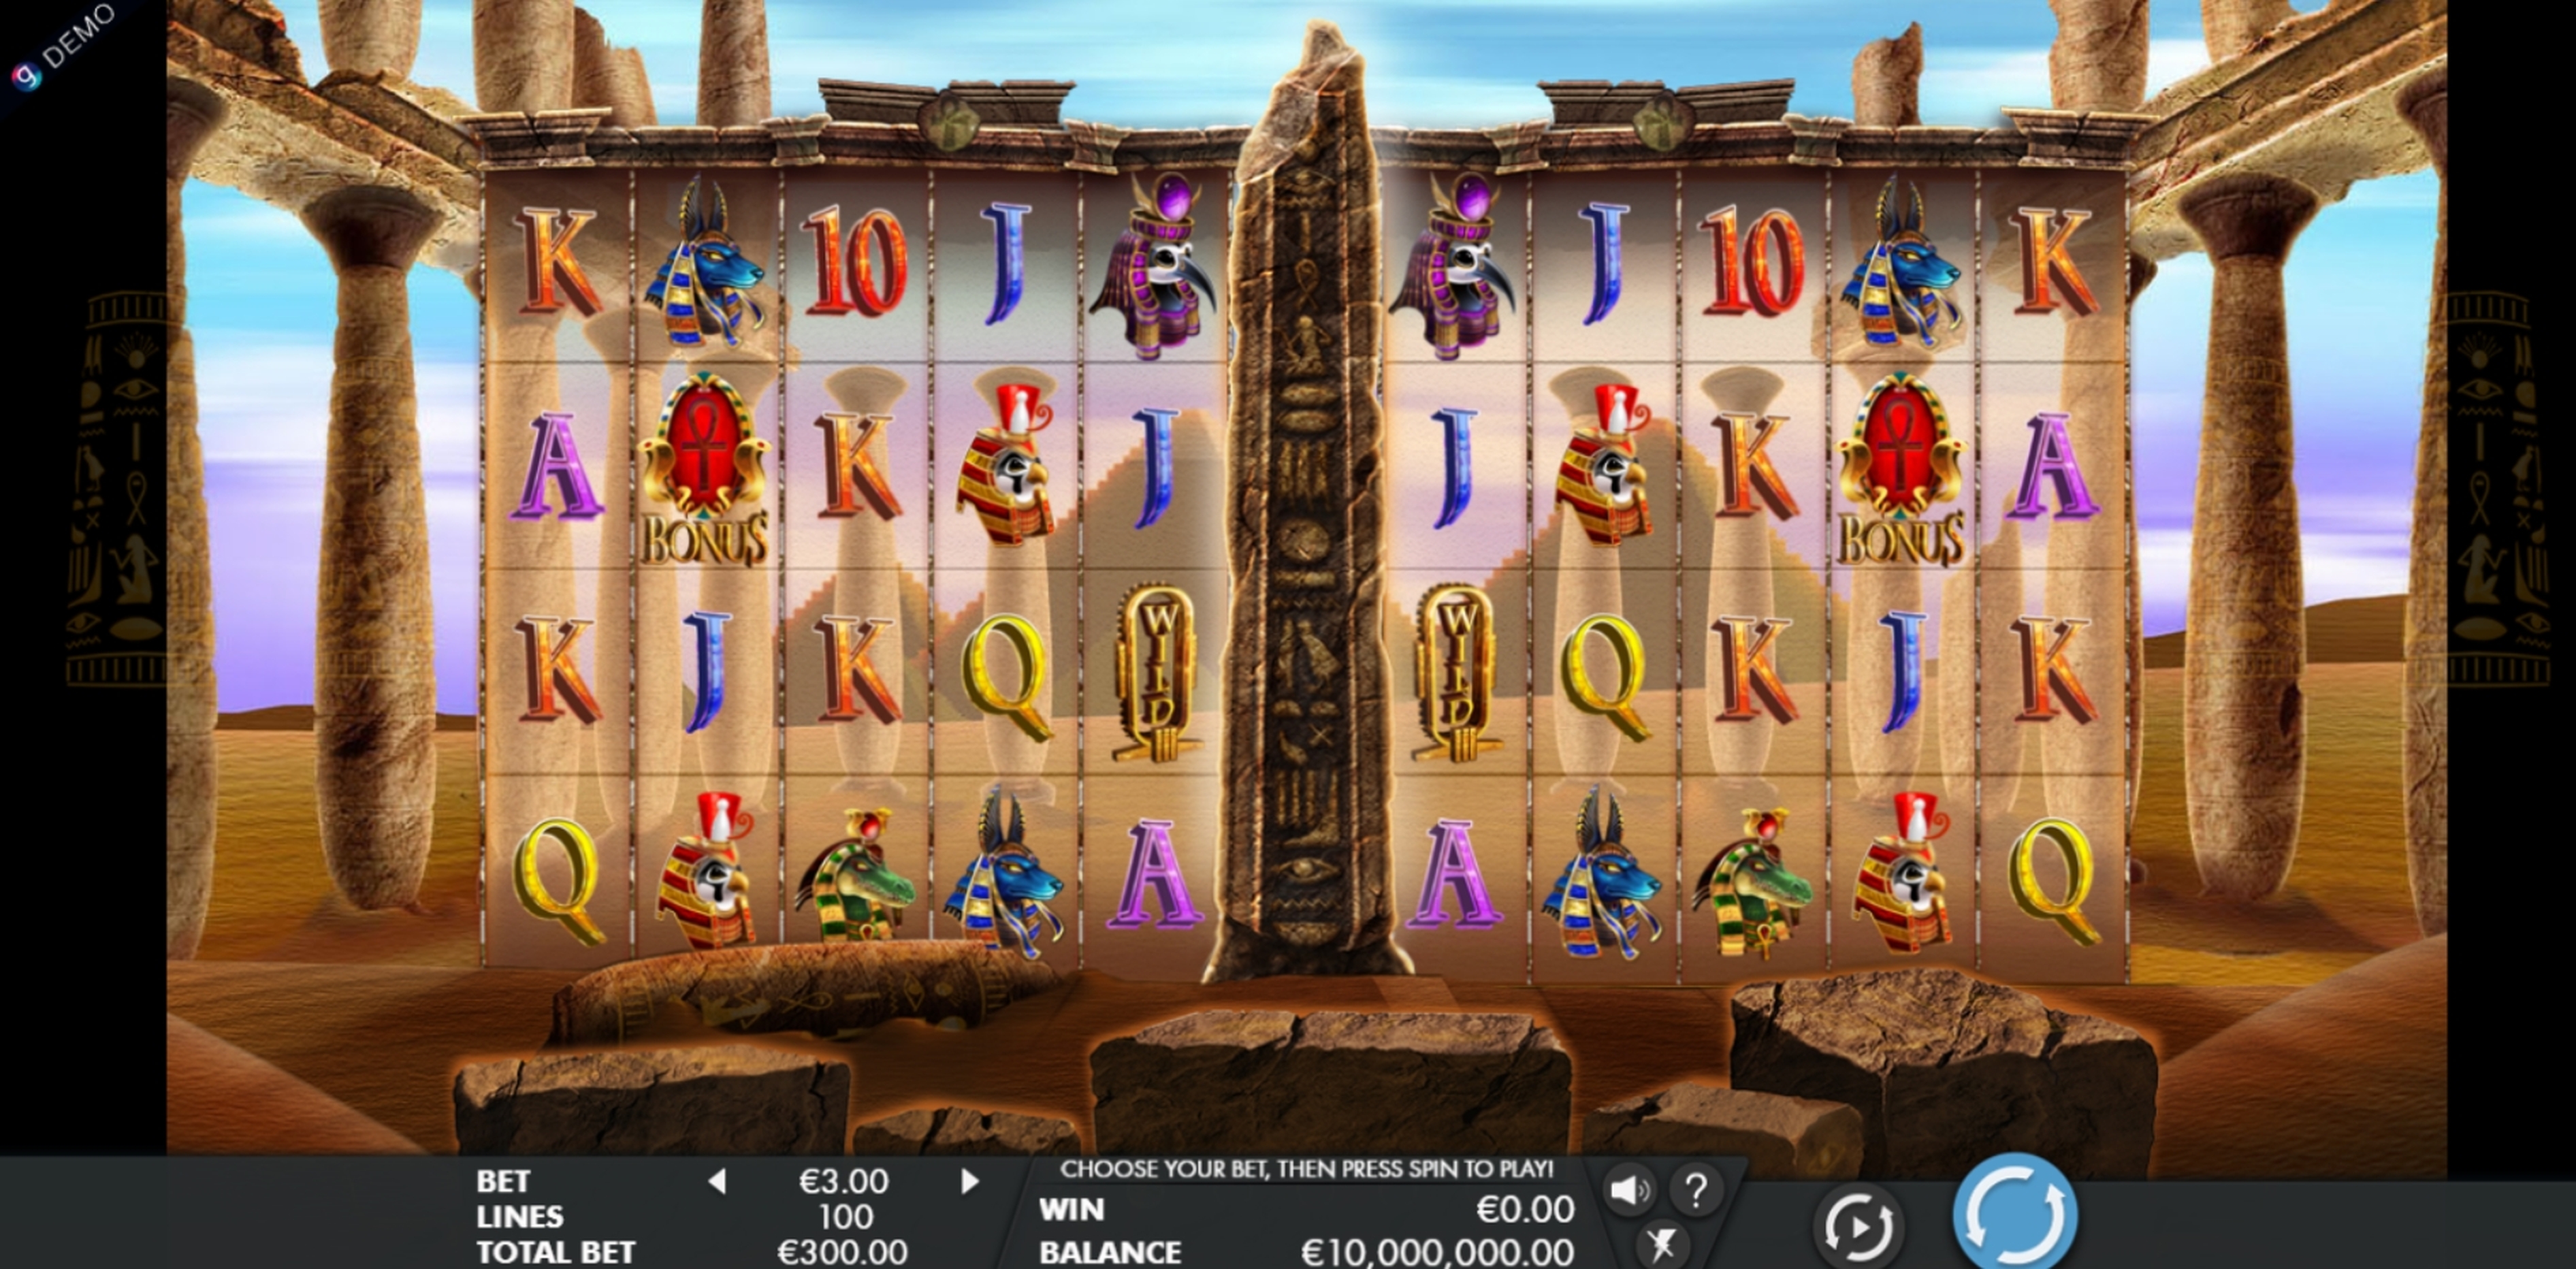 Reels in Temple of Luxor Slot Game by Genesis Gaming